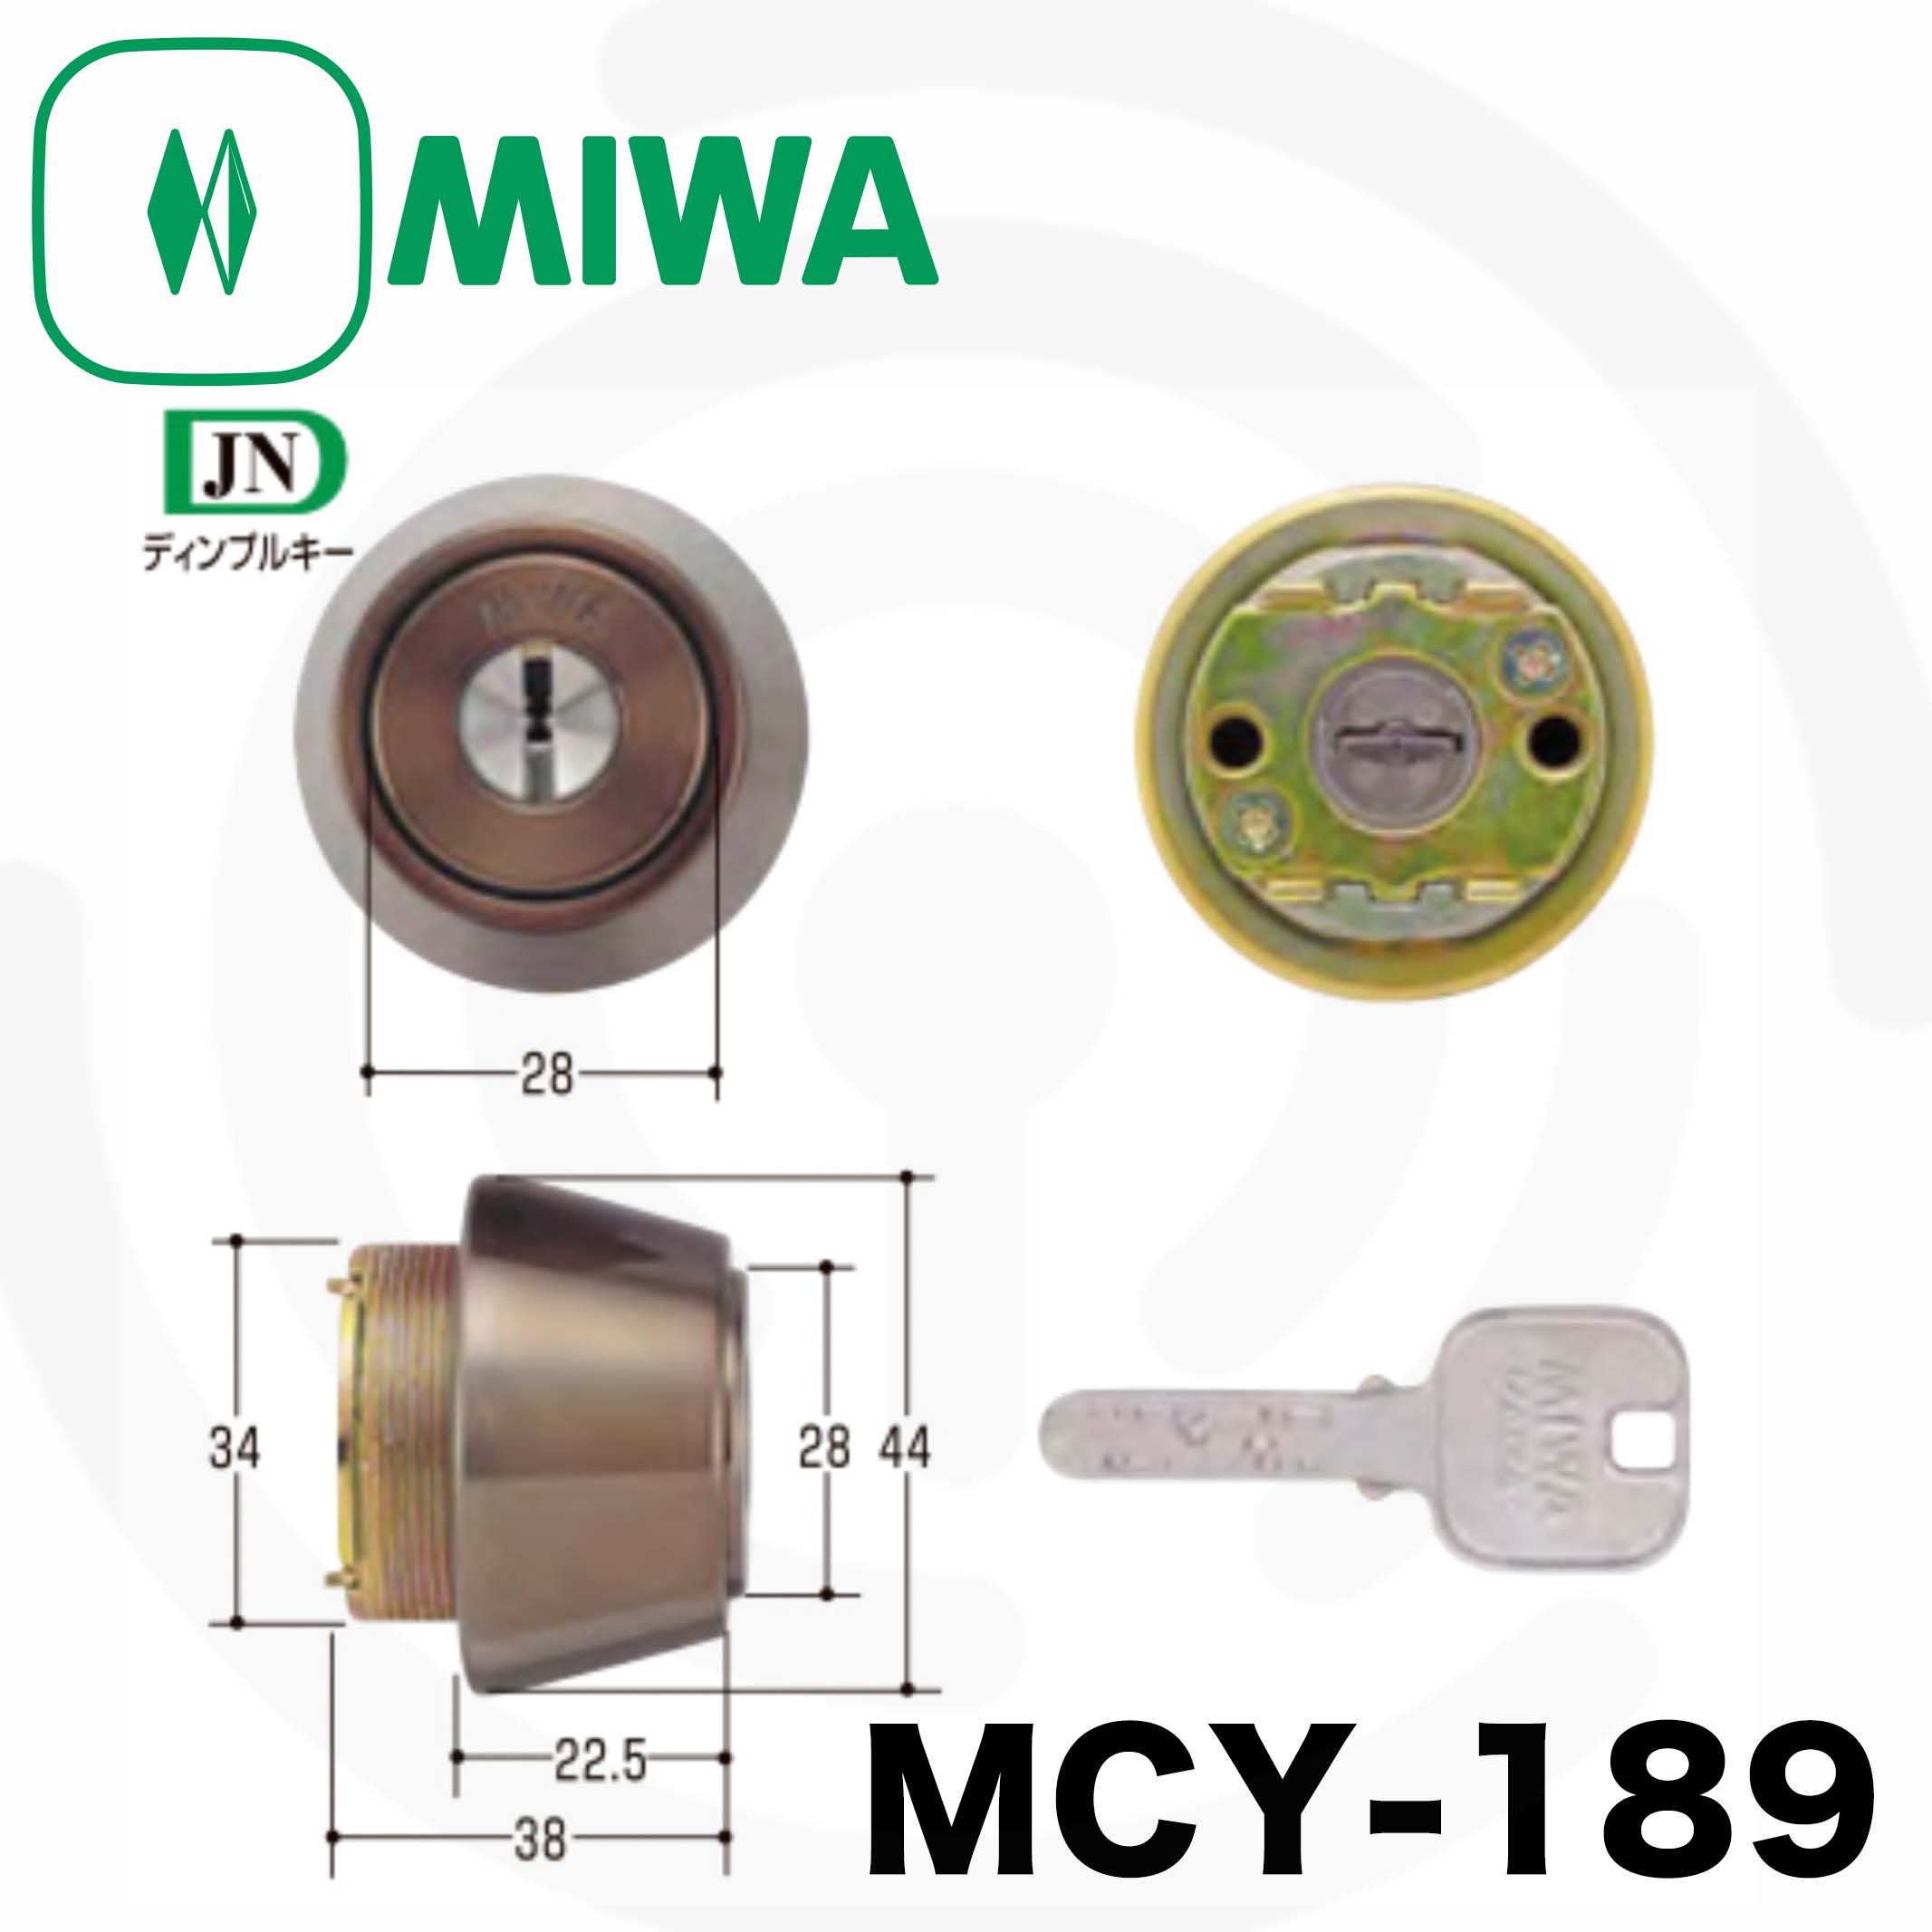 ミズタニ:MIWA取替用シリンダー MCY-484 鍵 交換用-